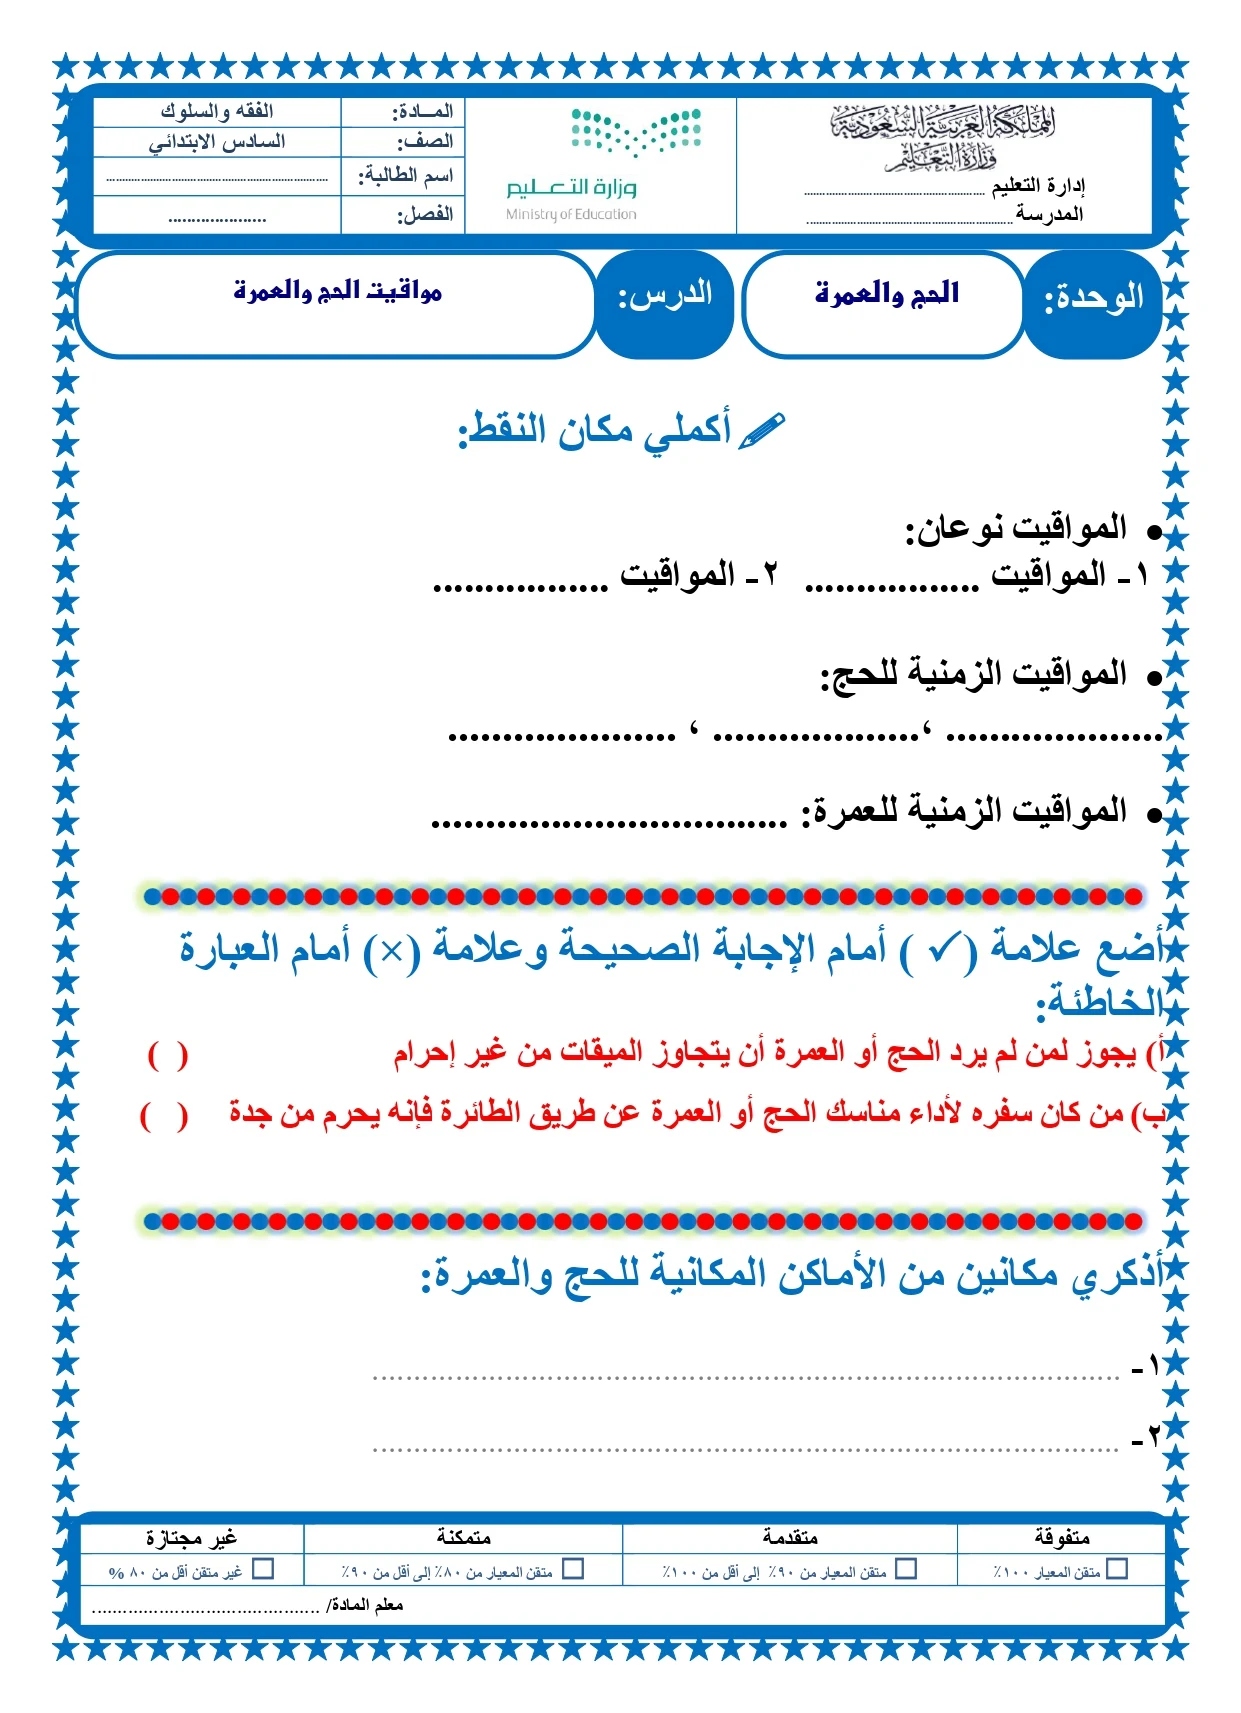 أوراق عمل لمادة التربية الإسلامية الصف السادس الابتدائي الفصل الدراسي الثالث pdf تحميل مباشر مجاني